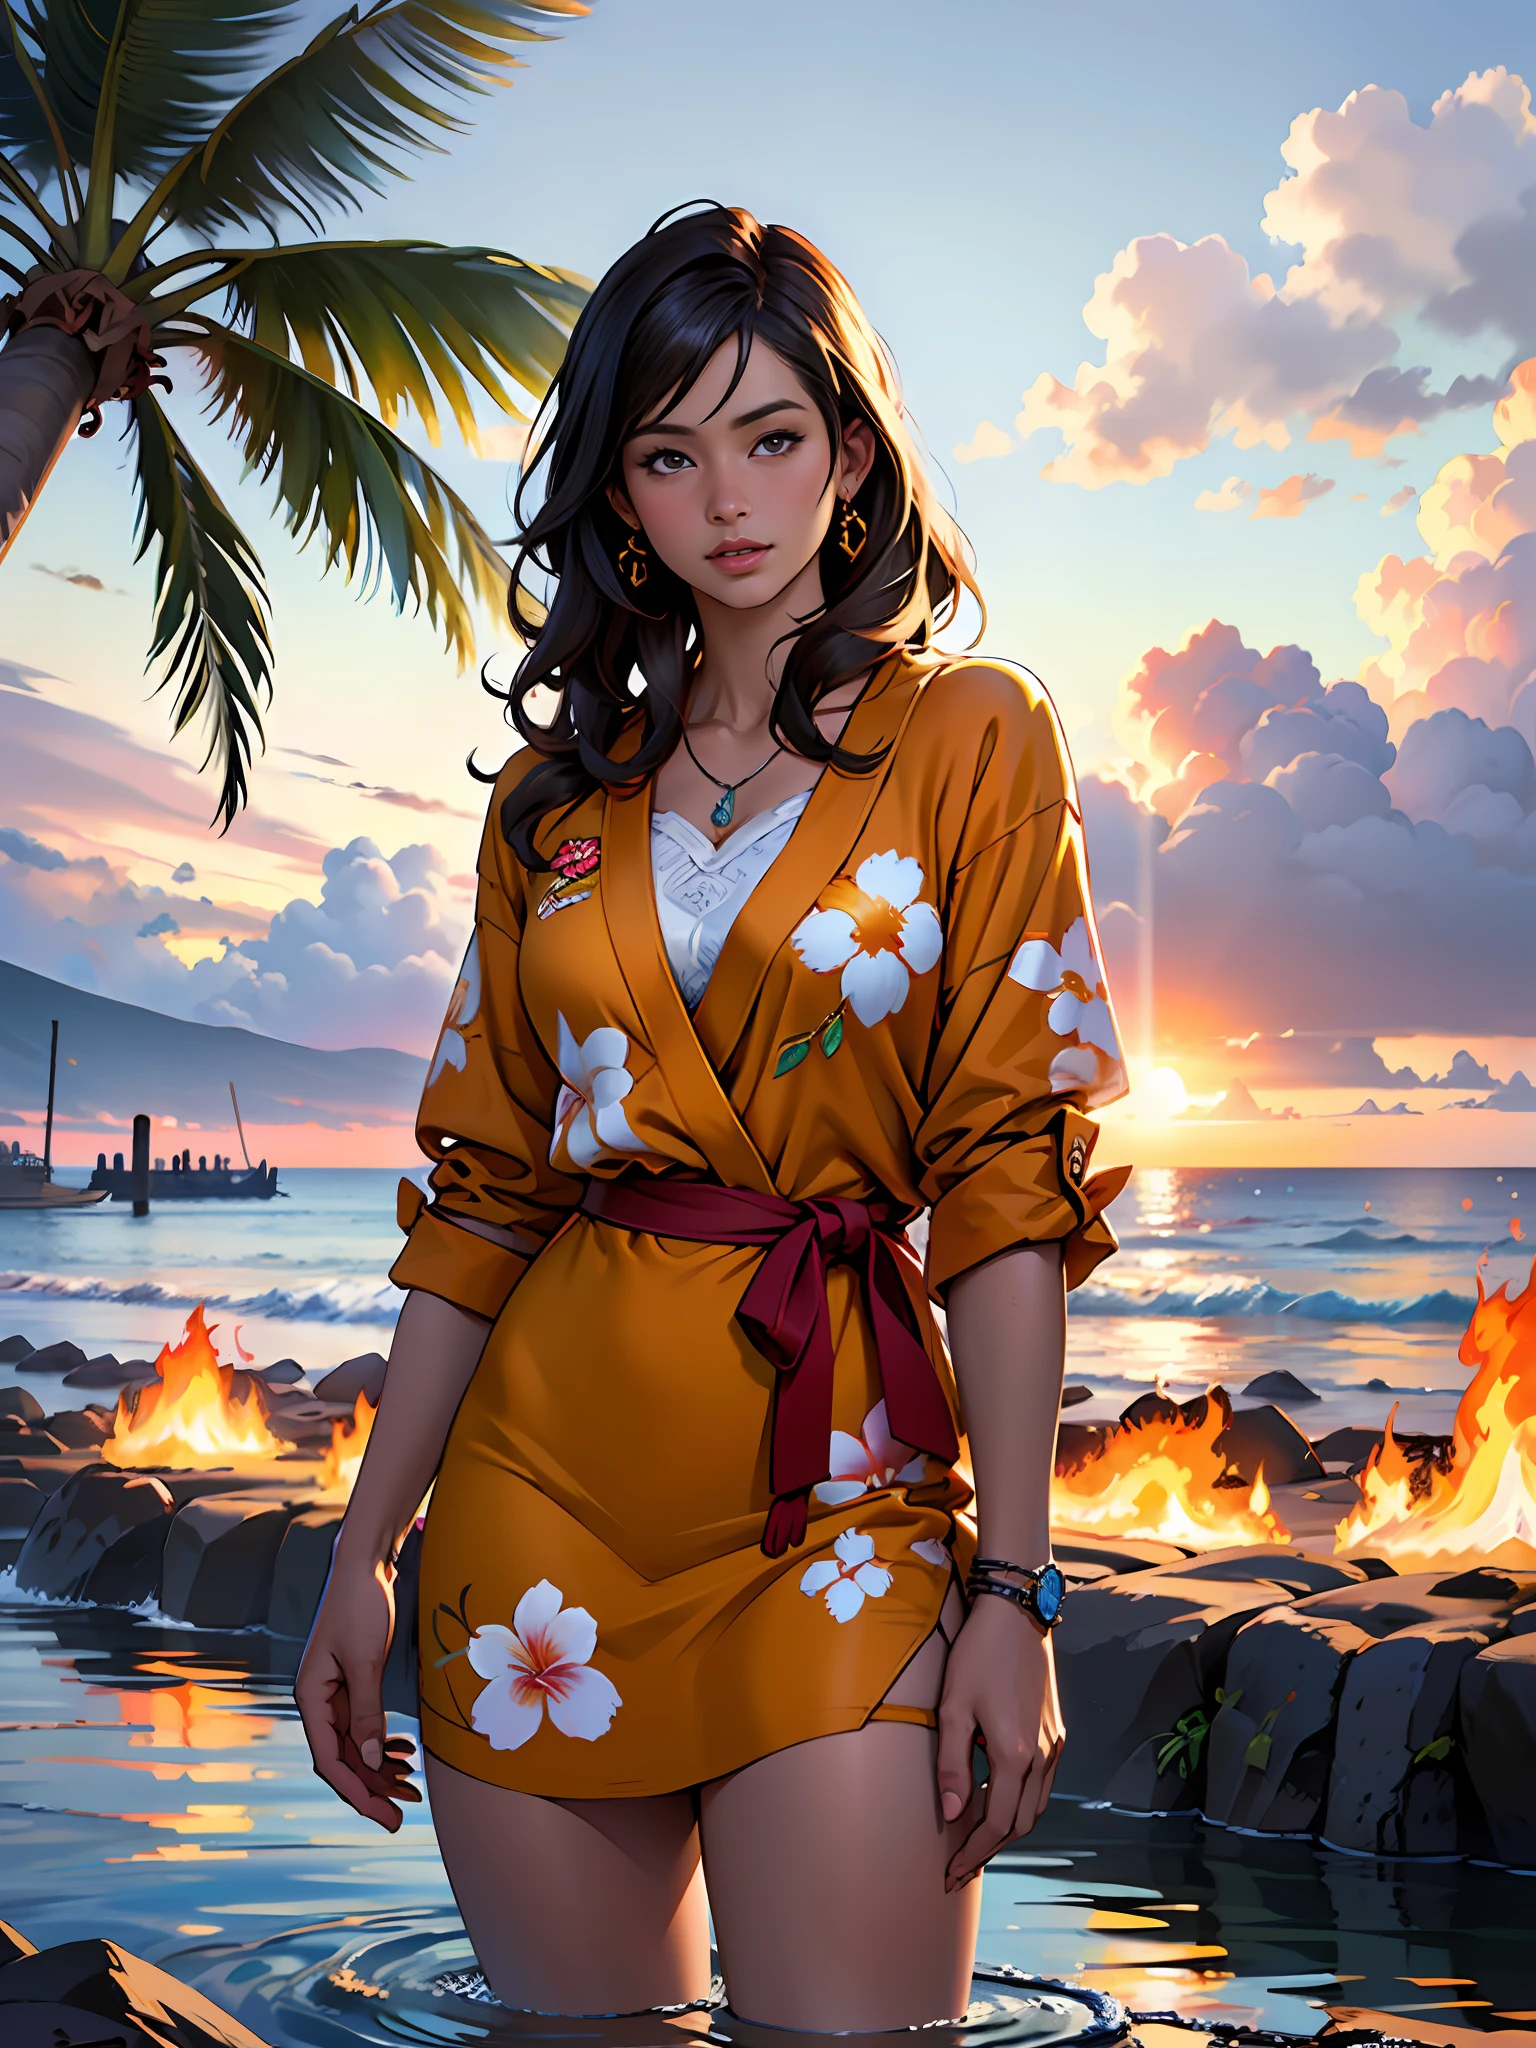 Гавайи Лахайна горит огнем сзади, 1 девушка рисует с видом на воду, стиль Хайме Фриаса, Лучшее качество, реалистичный, отмеченная наградами цветная иллюстрация, (Сложная деталь: 1.2), (мелкие детали)